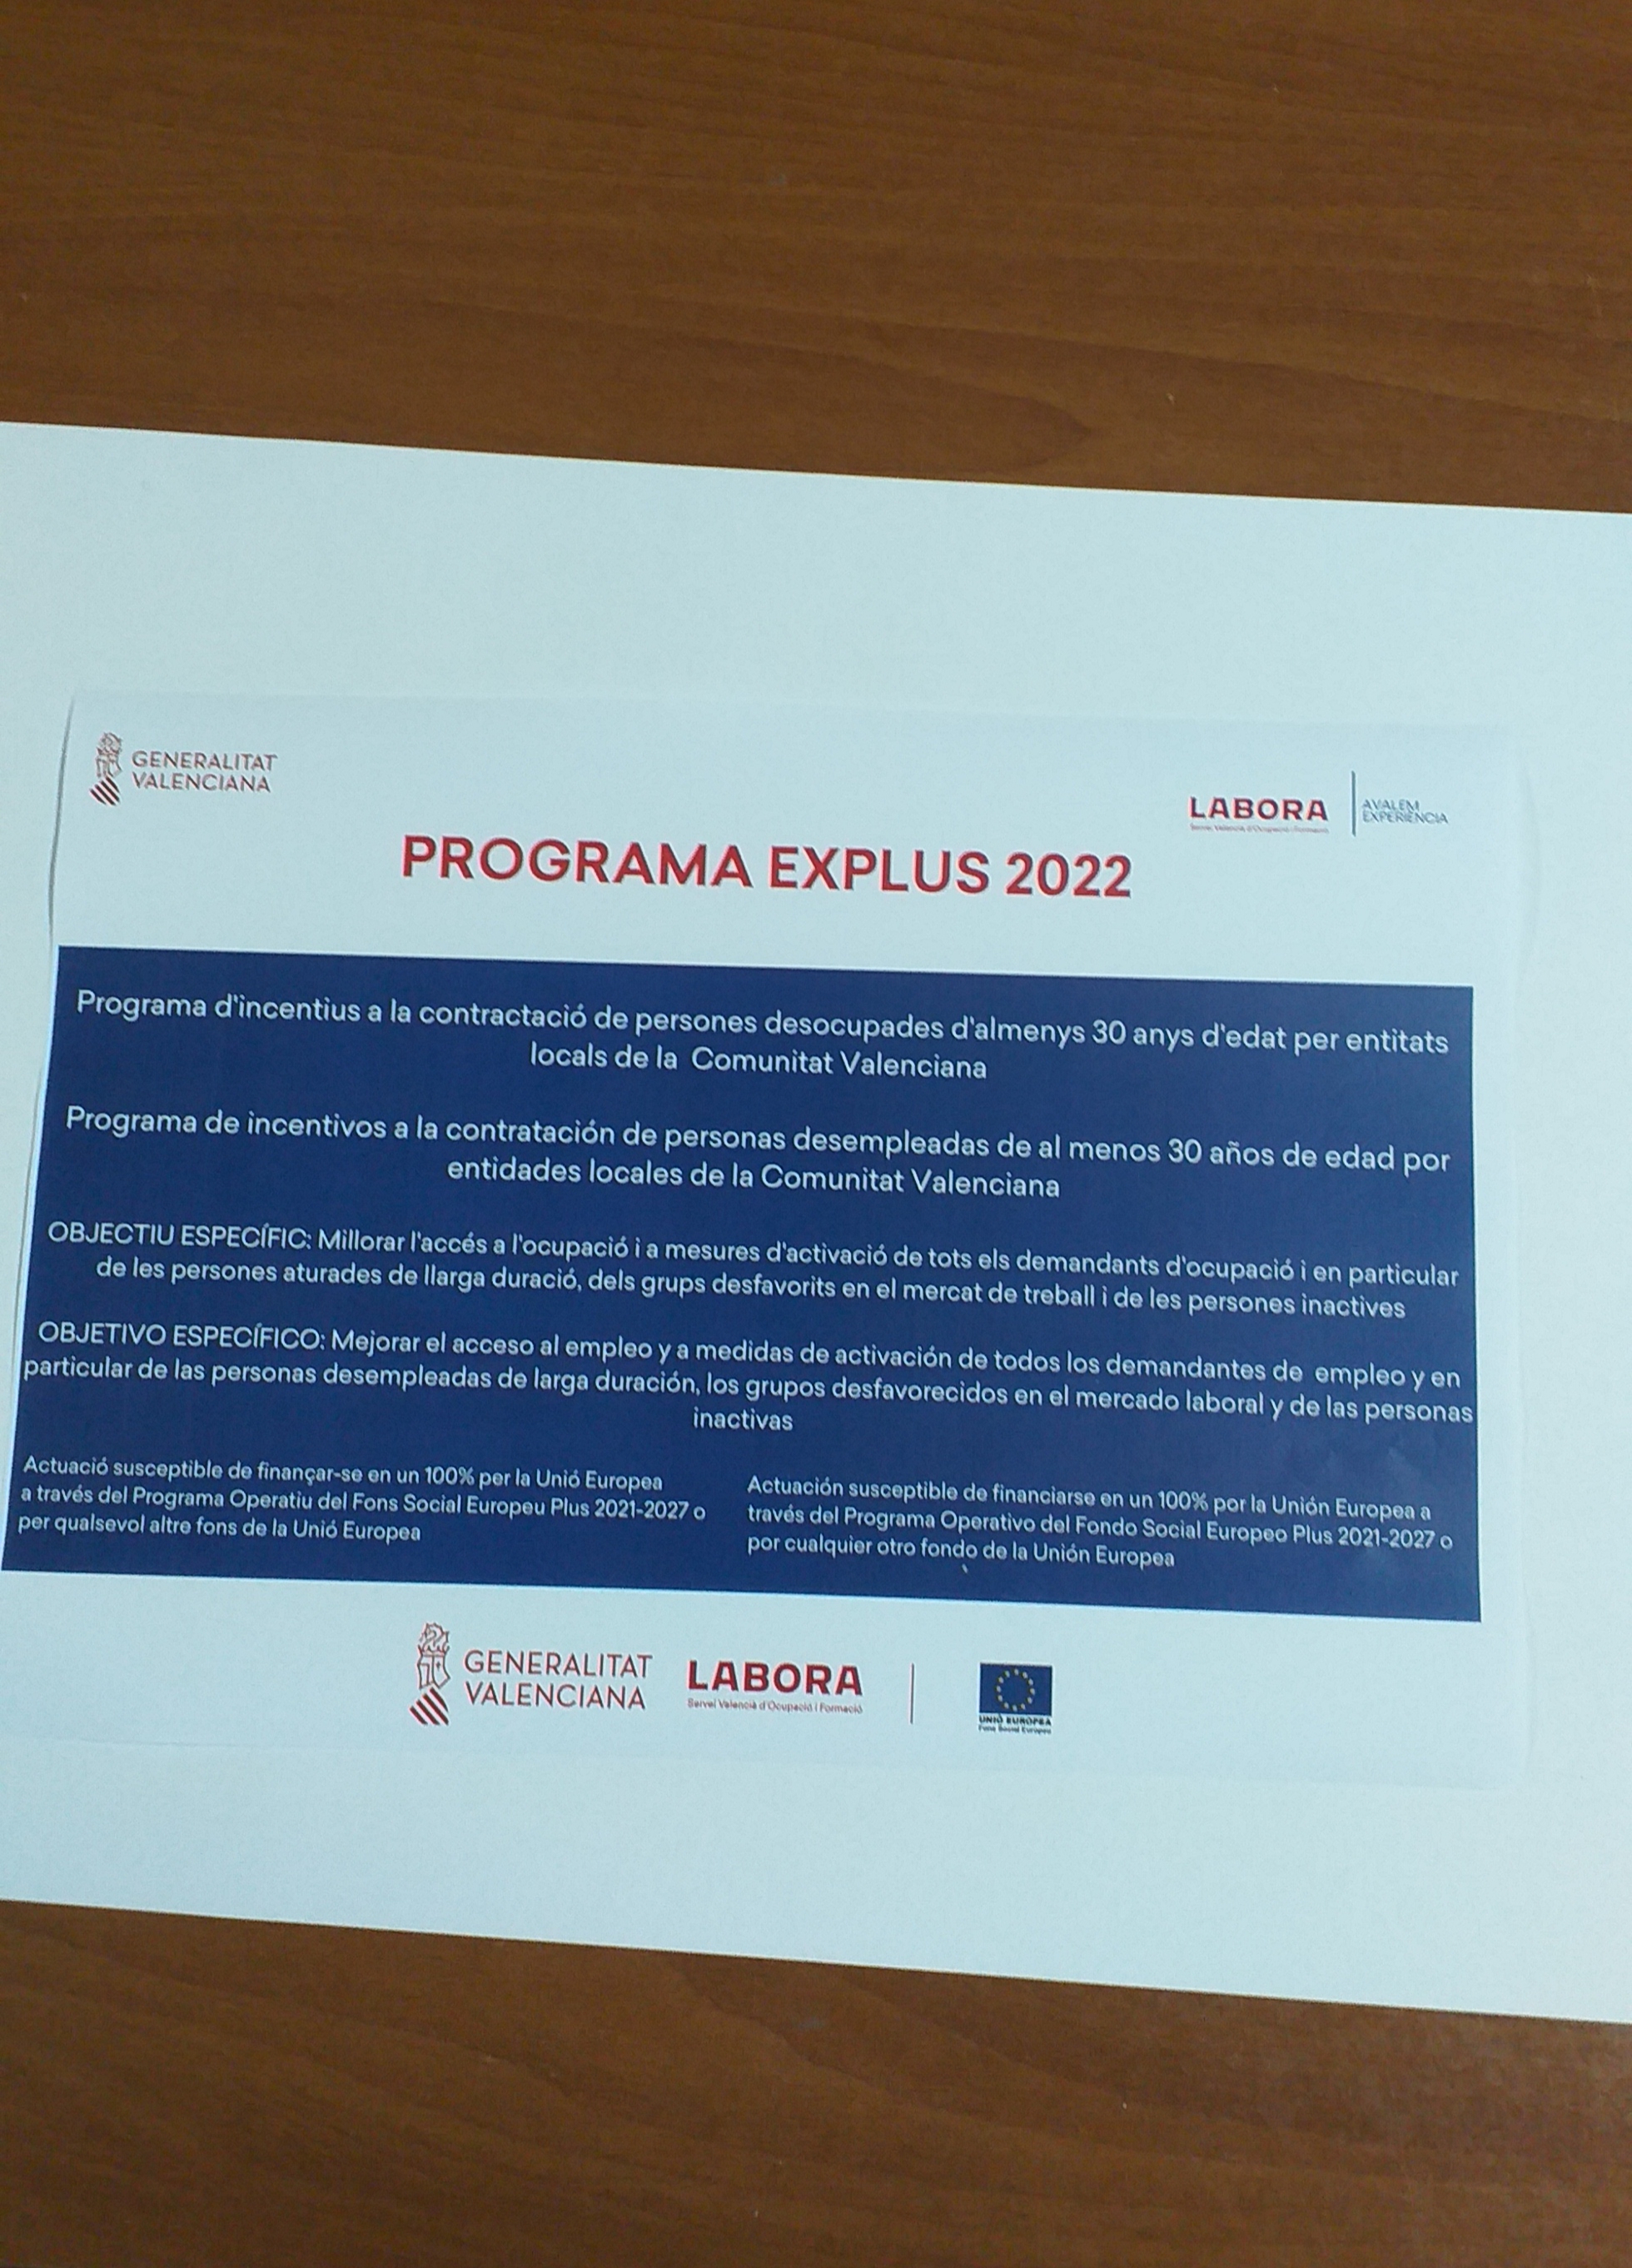 Subvención EXPLUS 2022 concesión 17.839,44 euros para la contratación de 1 persona